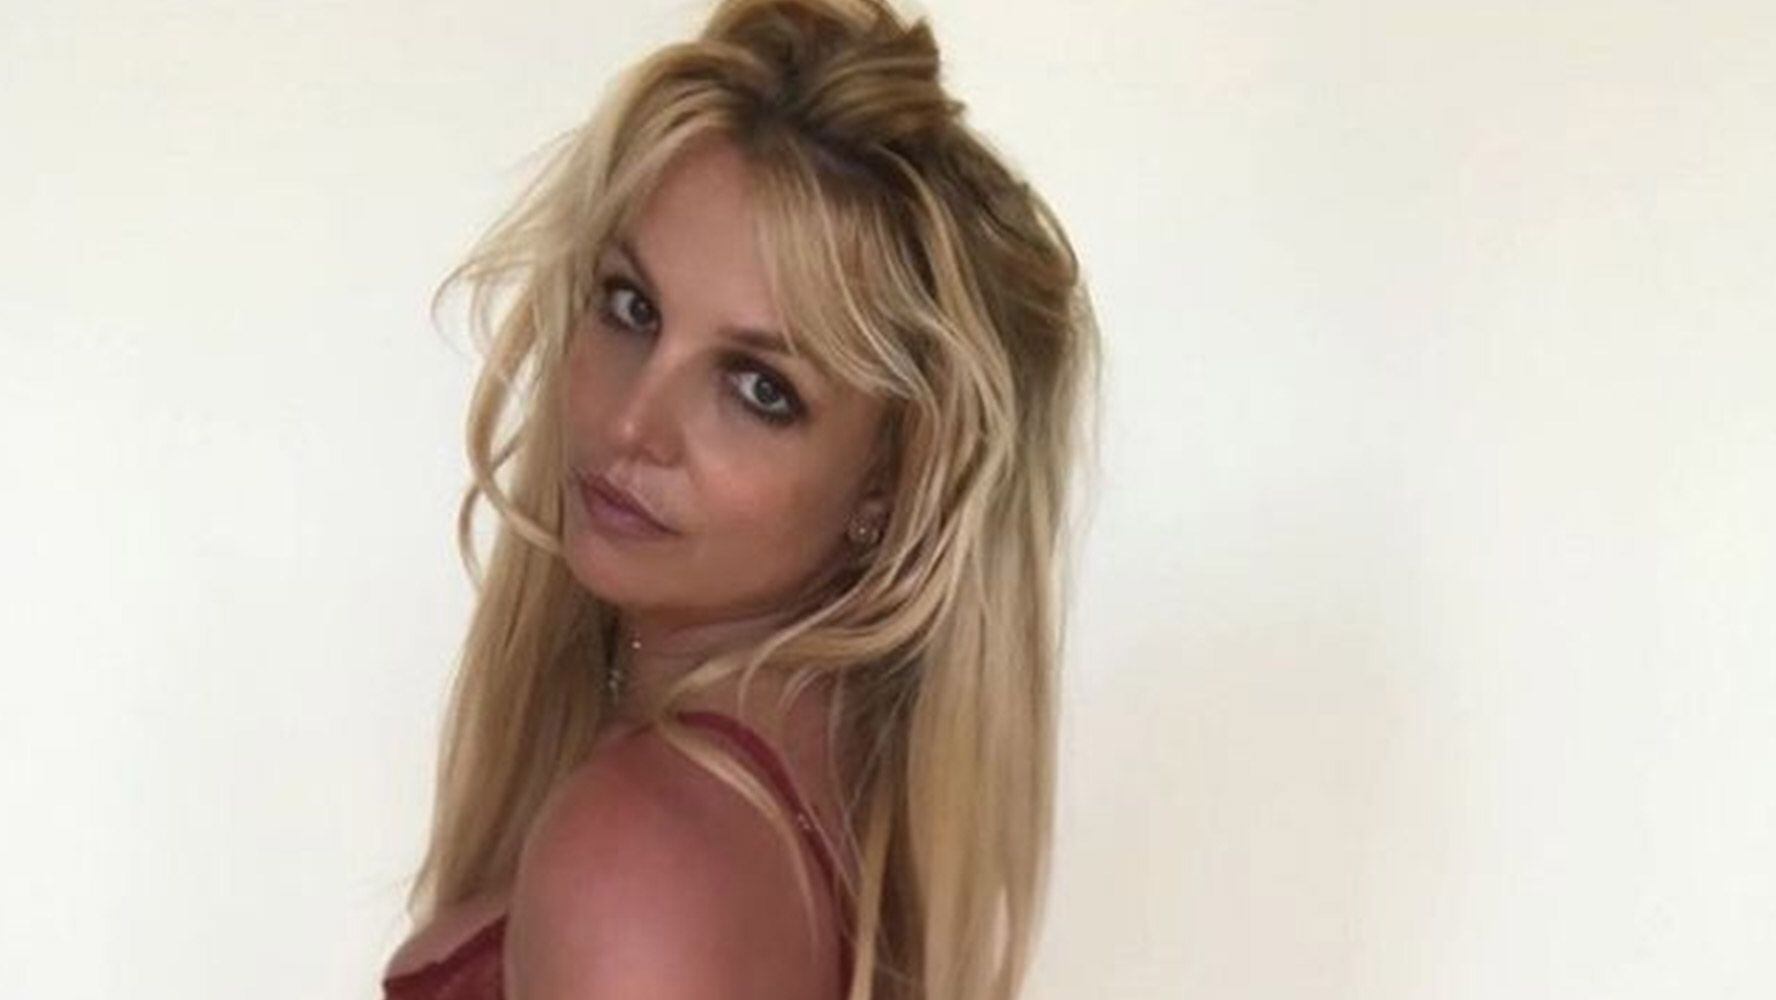 Britney Spears habla sobre fin de su tutela: quiere que el caso cambie el 'sistema corrupto'